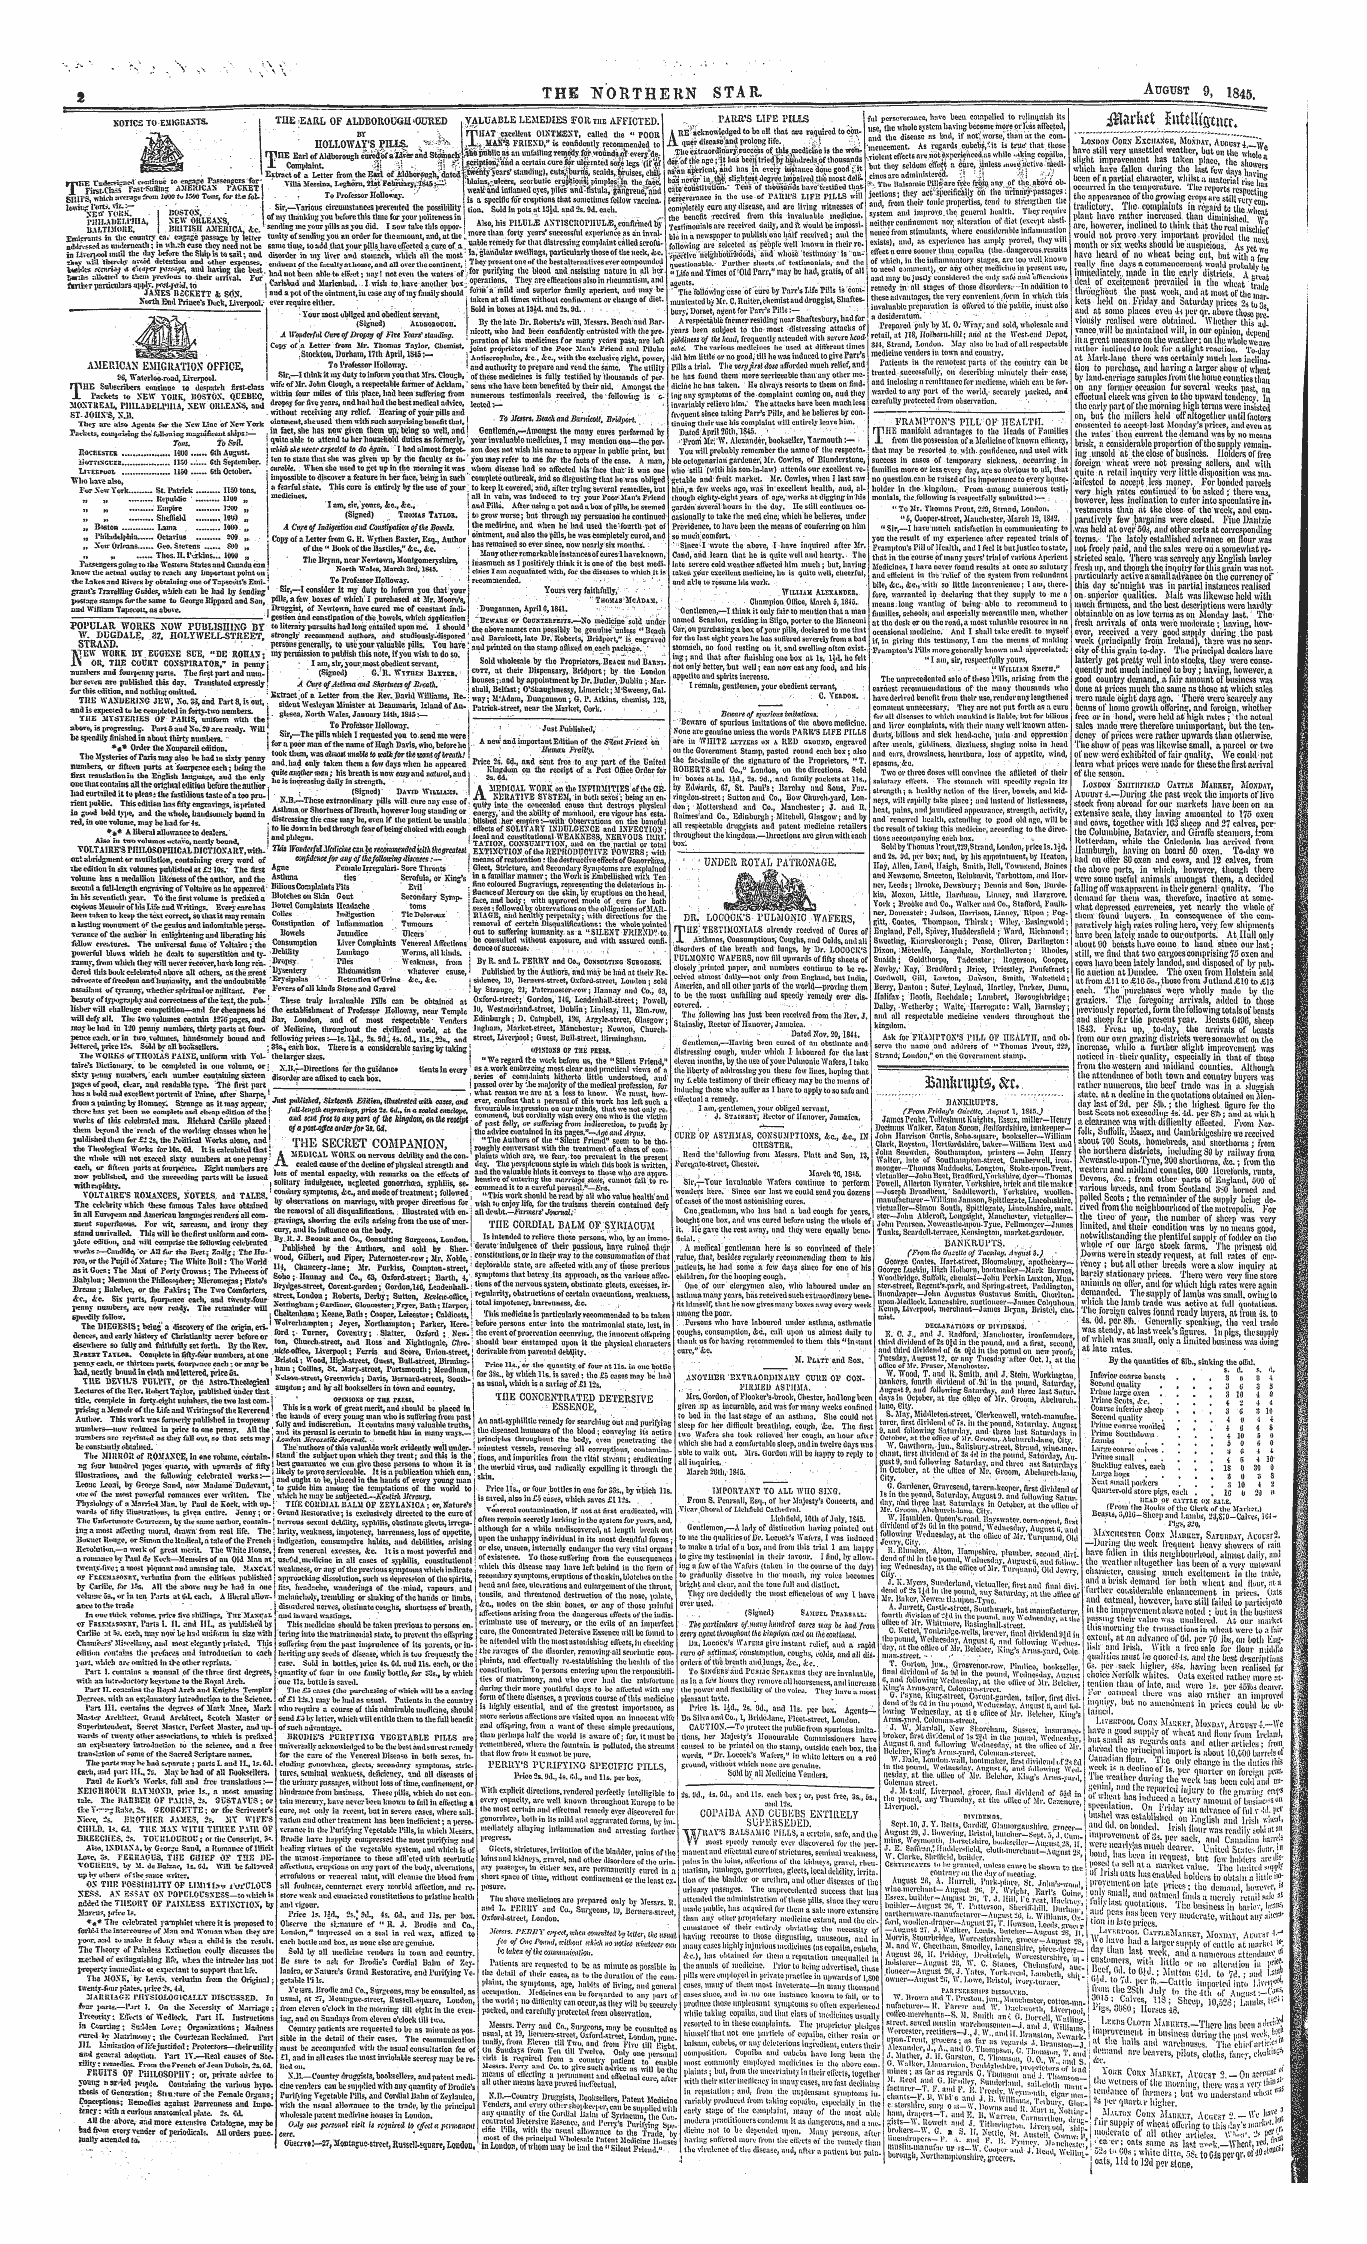 Northern Star (1837-1852): jS F Y, 1st edition - Xotics To-Emksbaxts.